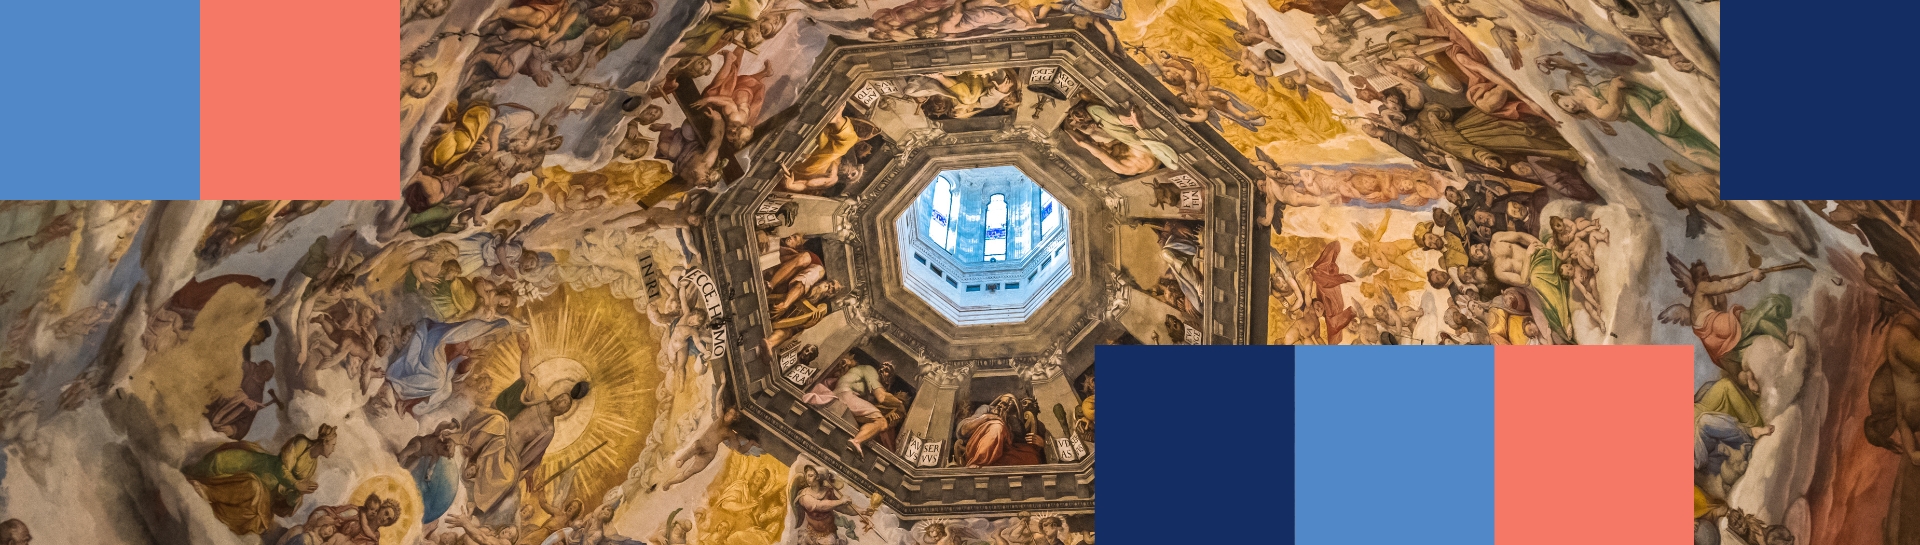 Afrescos na cúpula da Catedral de Florença